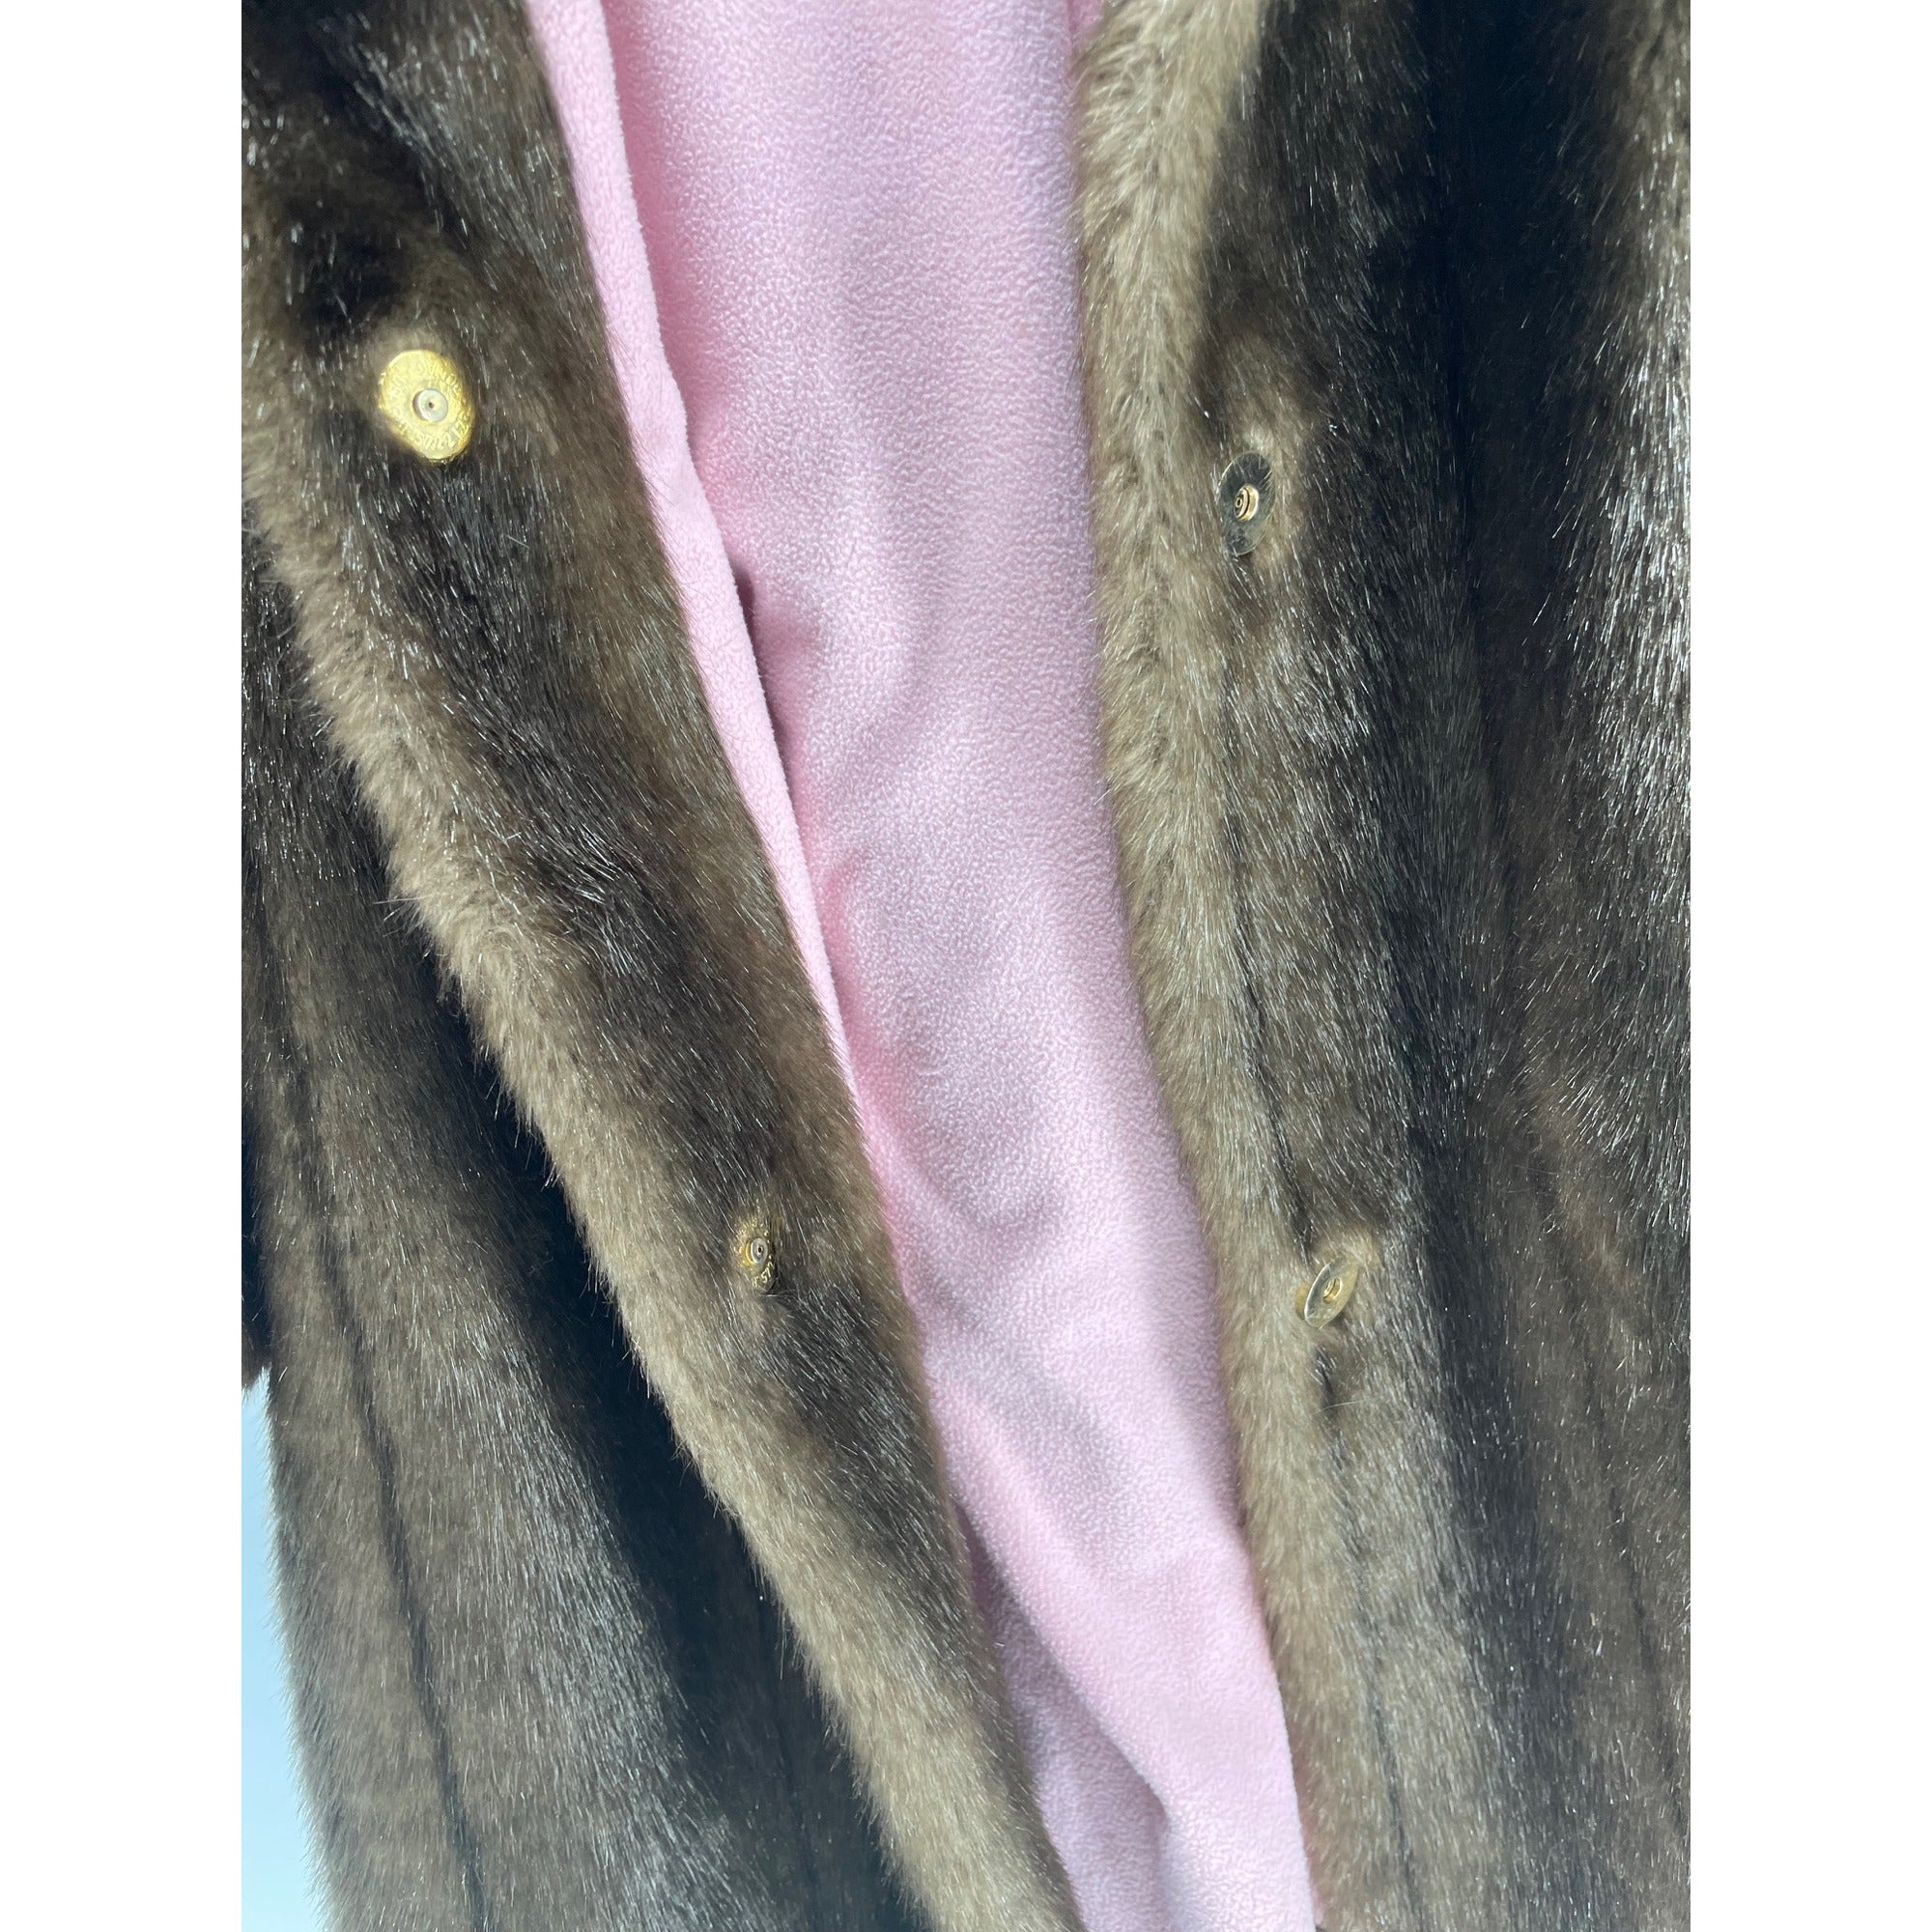 JM Originals Women’s 6X Brown Faux Fur Three Quarter-Length Sleeve Coat